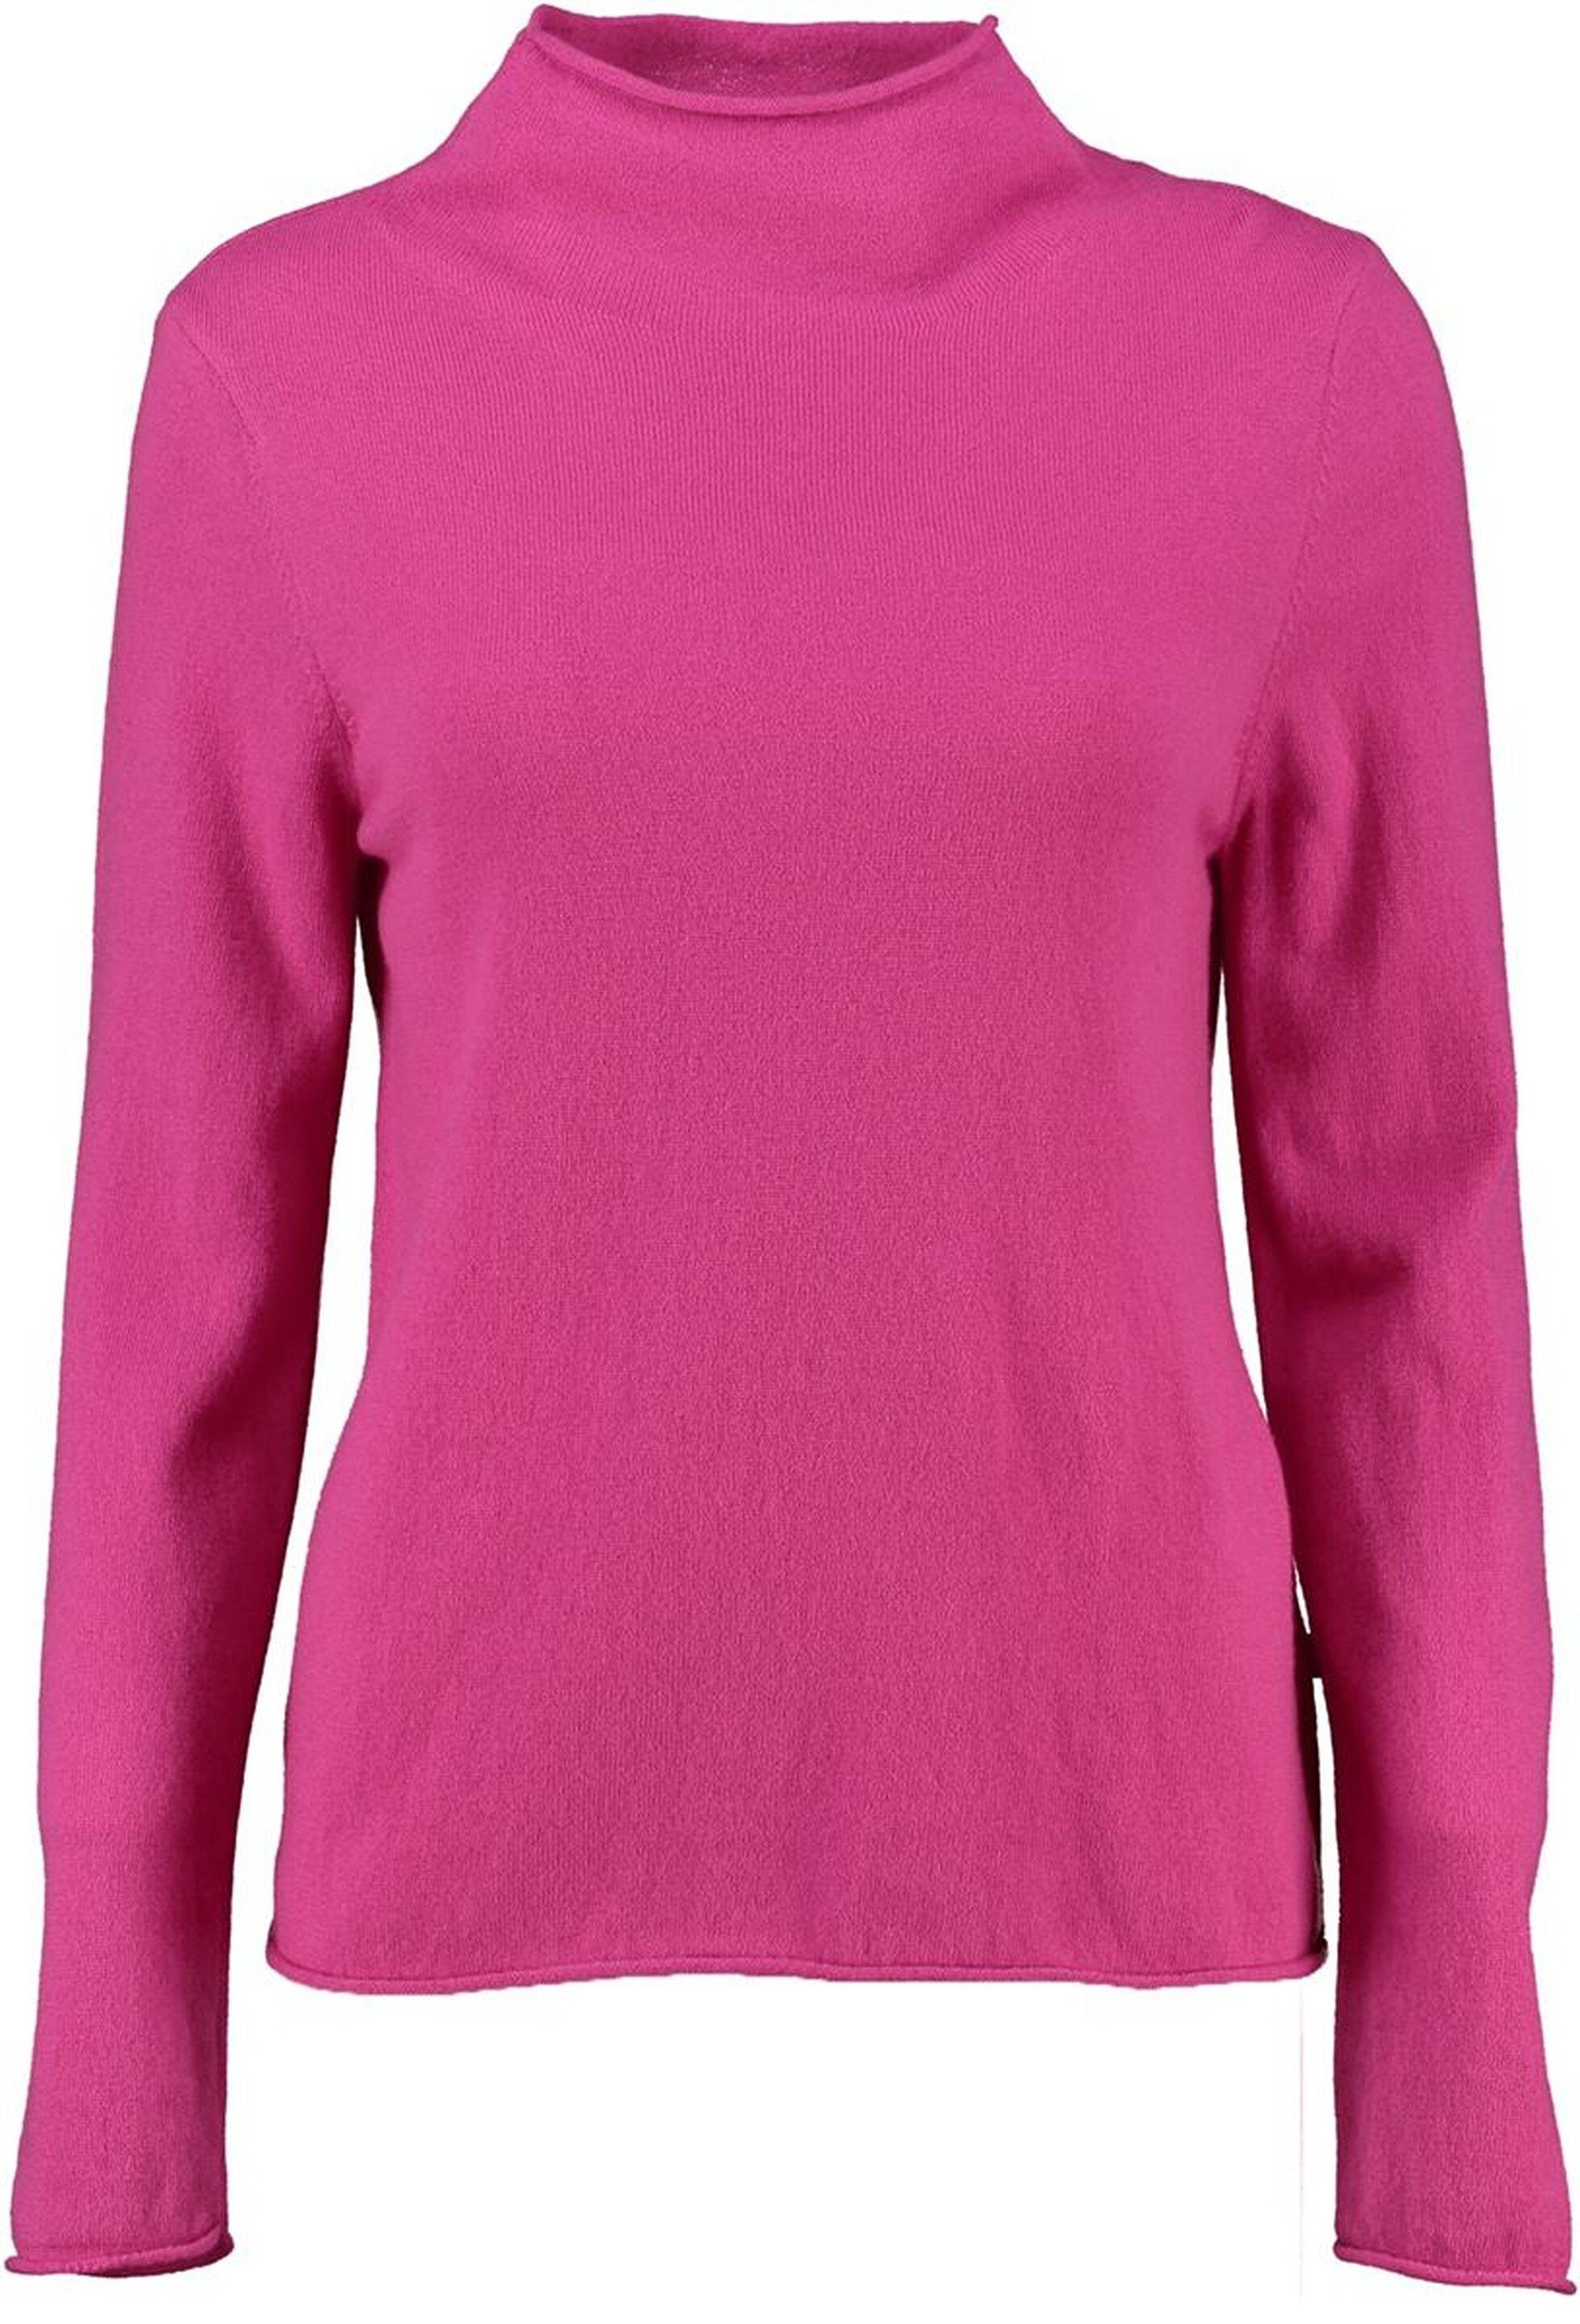 MAERZ Muenchen MAERZ Merinowolle pink weicher Stehkragen-Pullover super Stehkragenpullover in